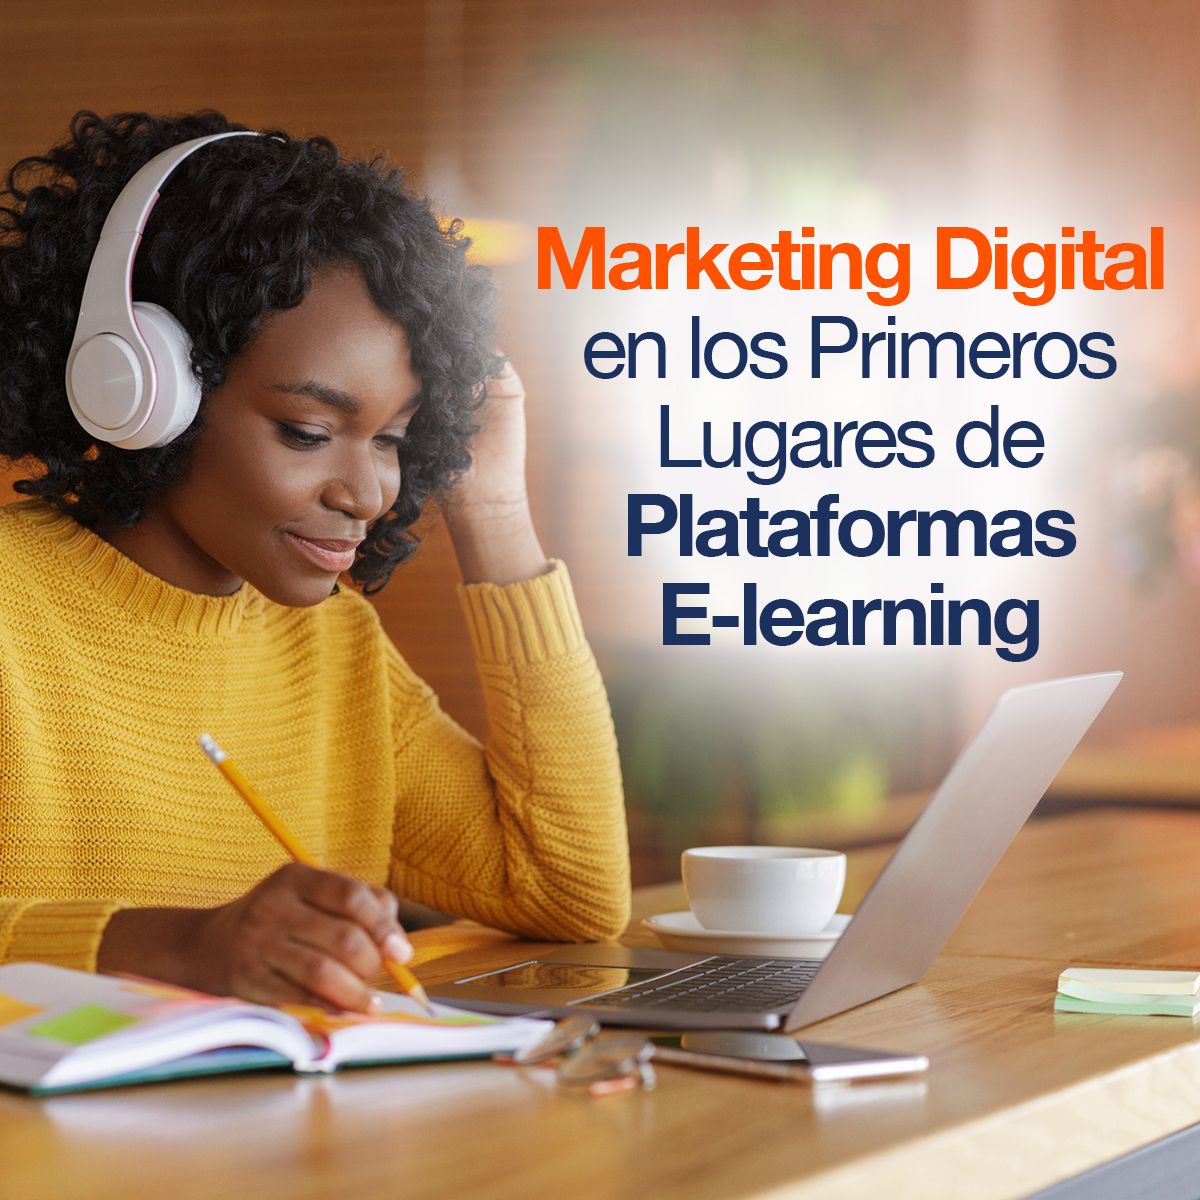 Marketing Digital en los Primeros Lugares de Plataformas E-learning